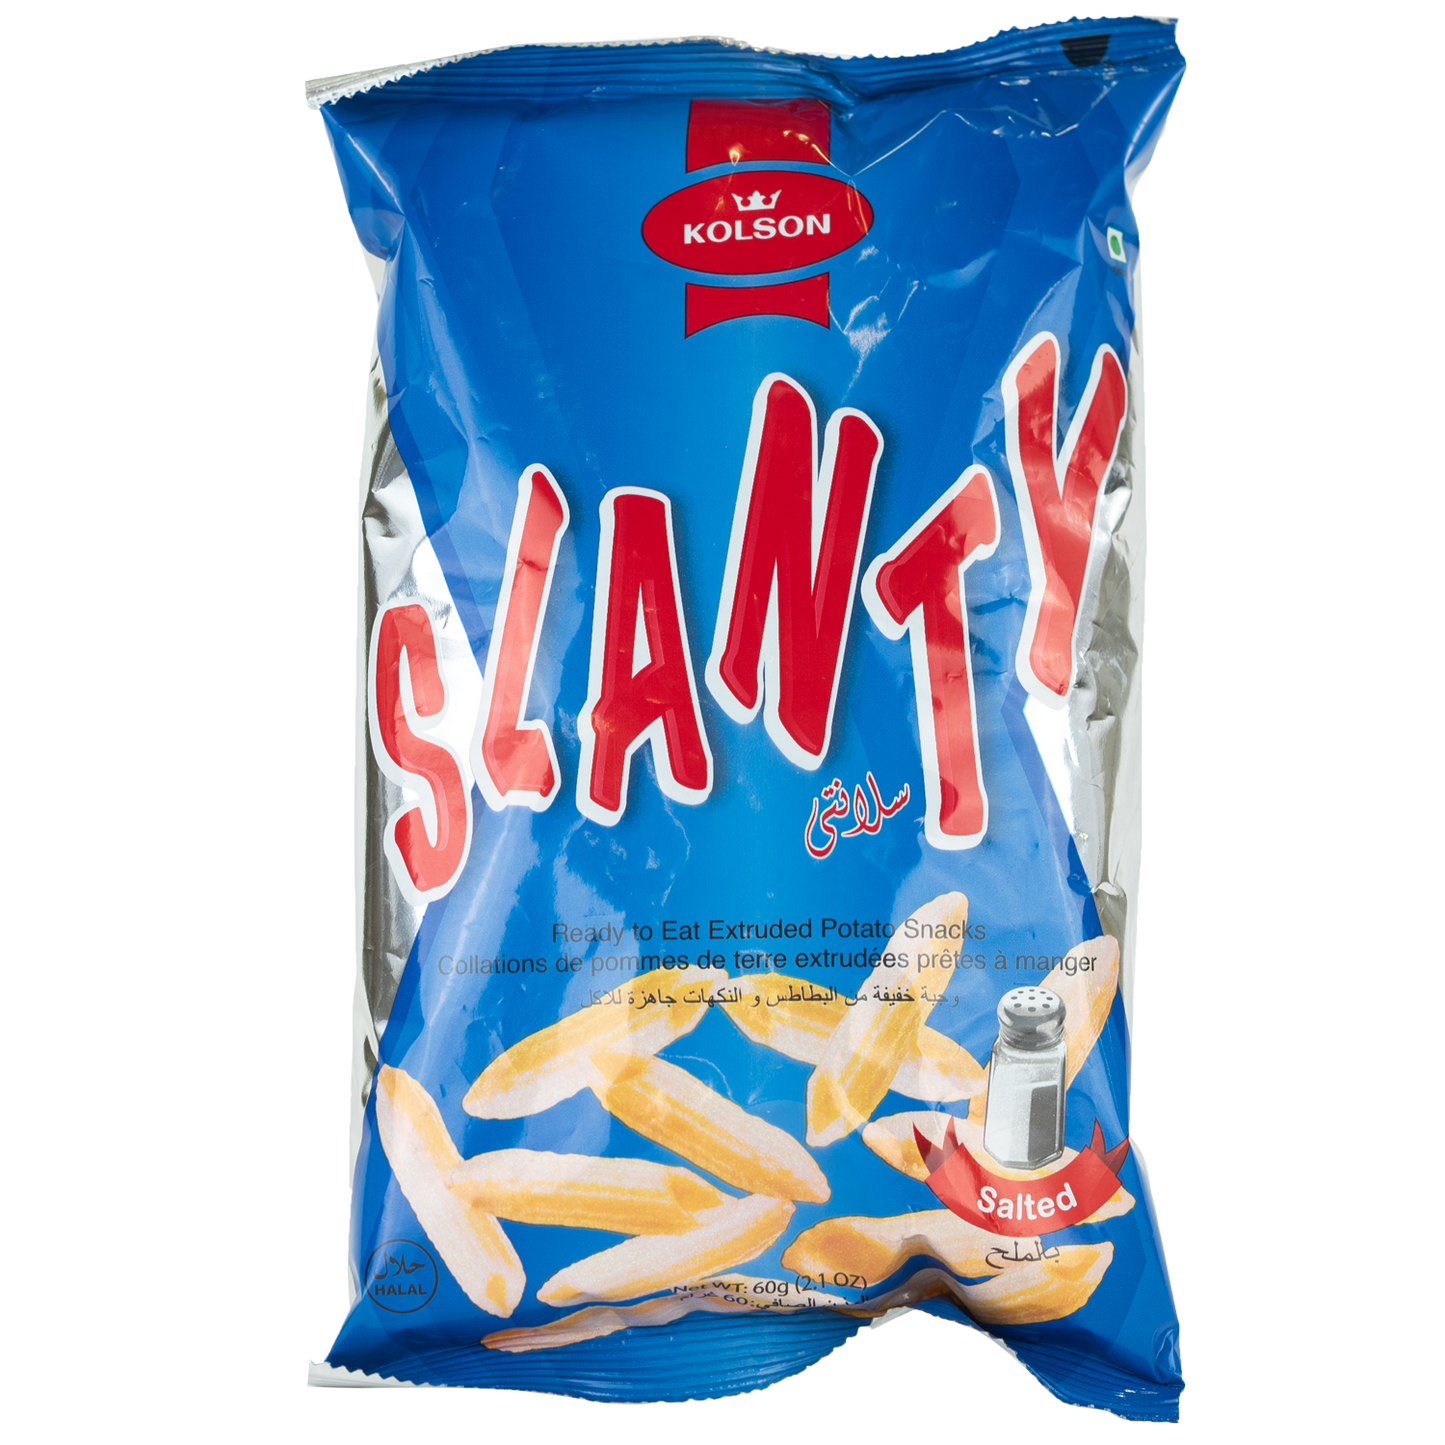 Kolson Slanty Salted Chips 60g